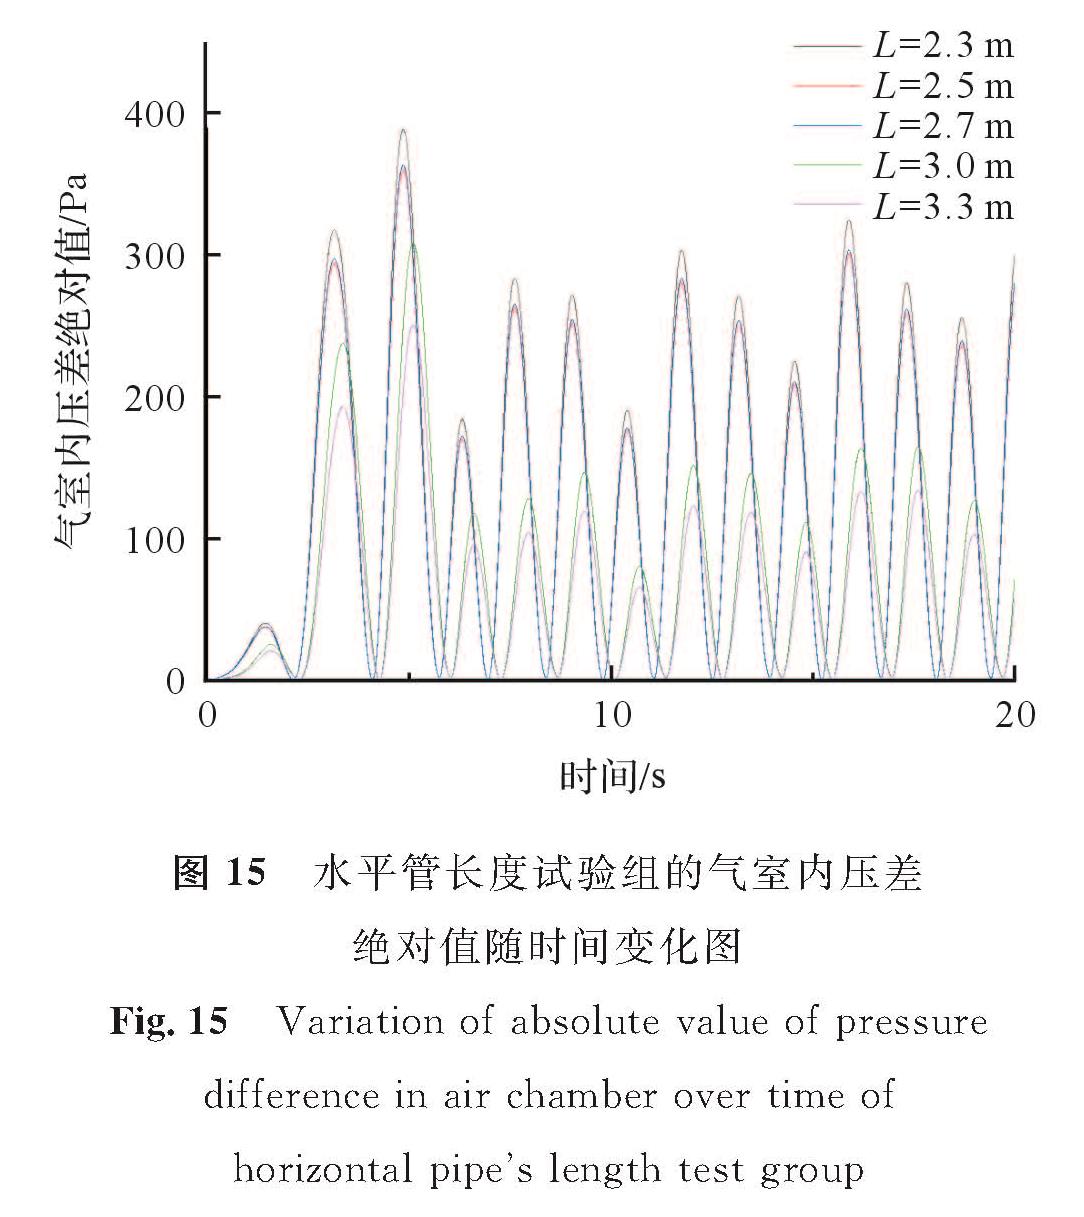 图 15 水平管长度试验组的气室内压差绝对值随时间变化图<br/>Fig.15 Variation of absolute value of pressure difference in air chamber over time of horizontal pipe's length test group